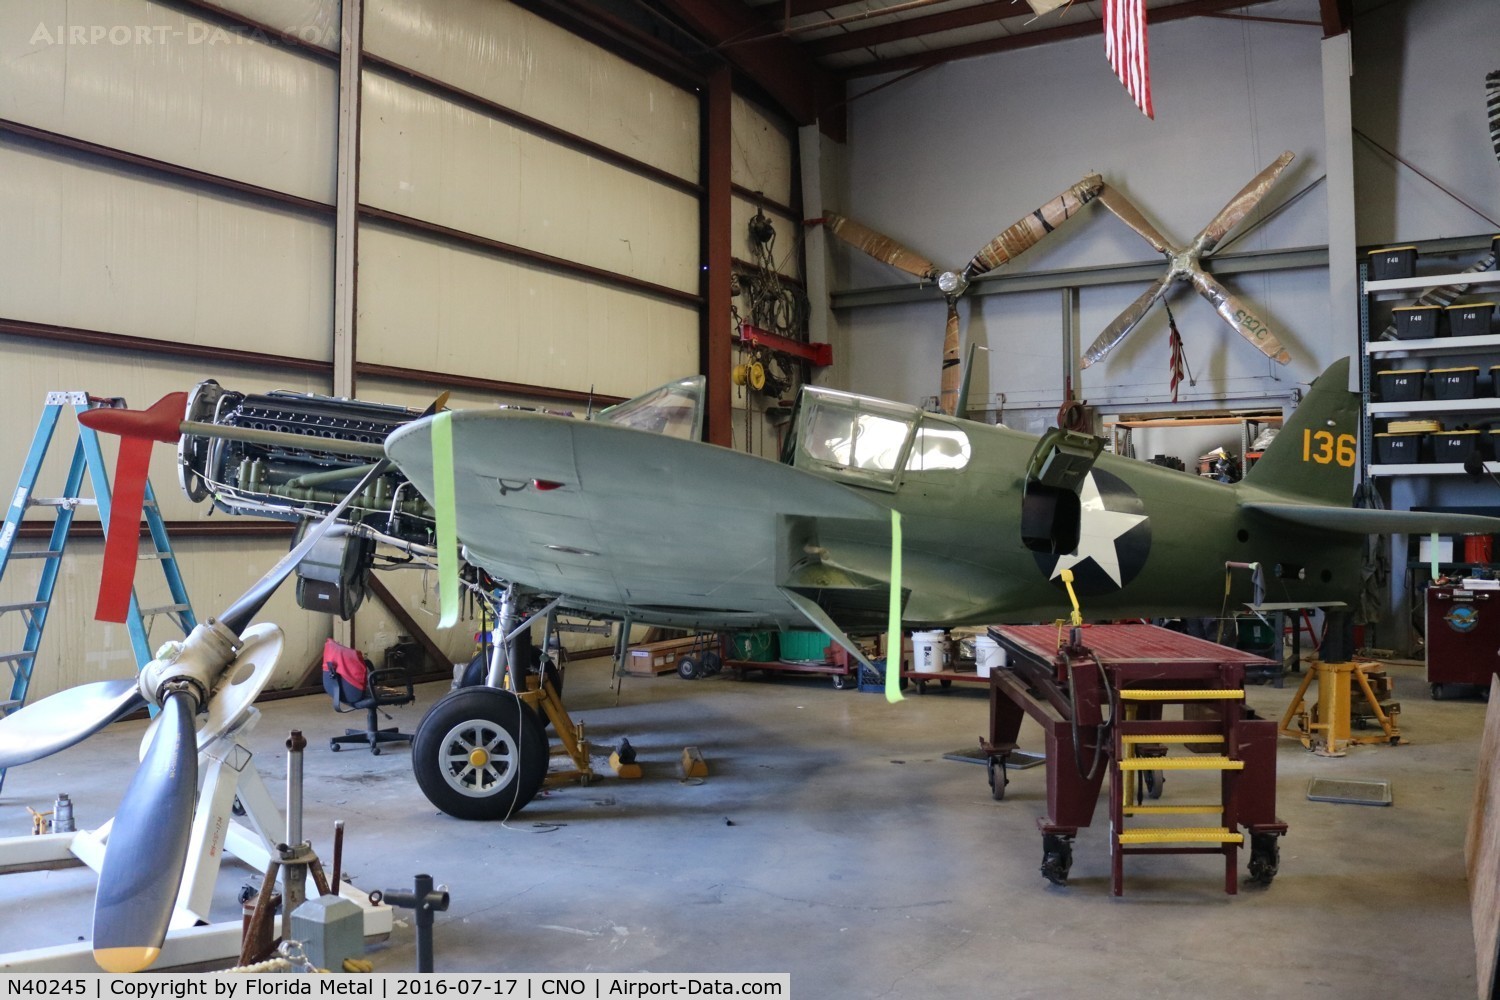 N40245, Curtiss P-40E Warhawk C/N 1038, P-40E being restored